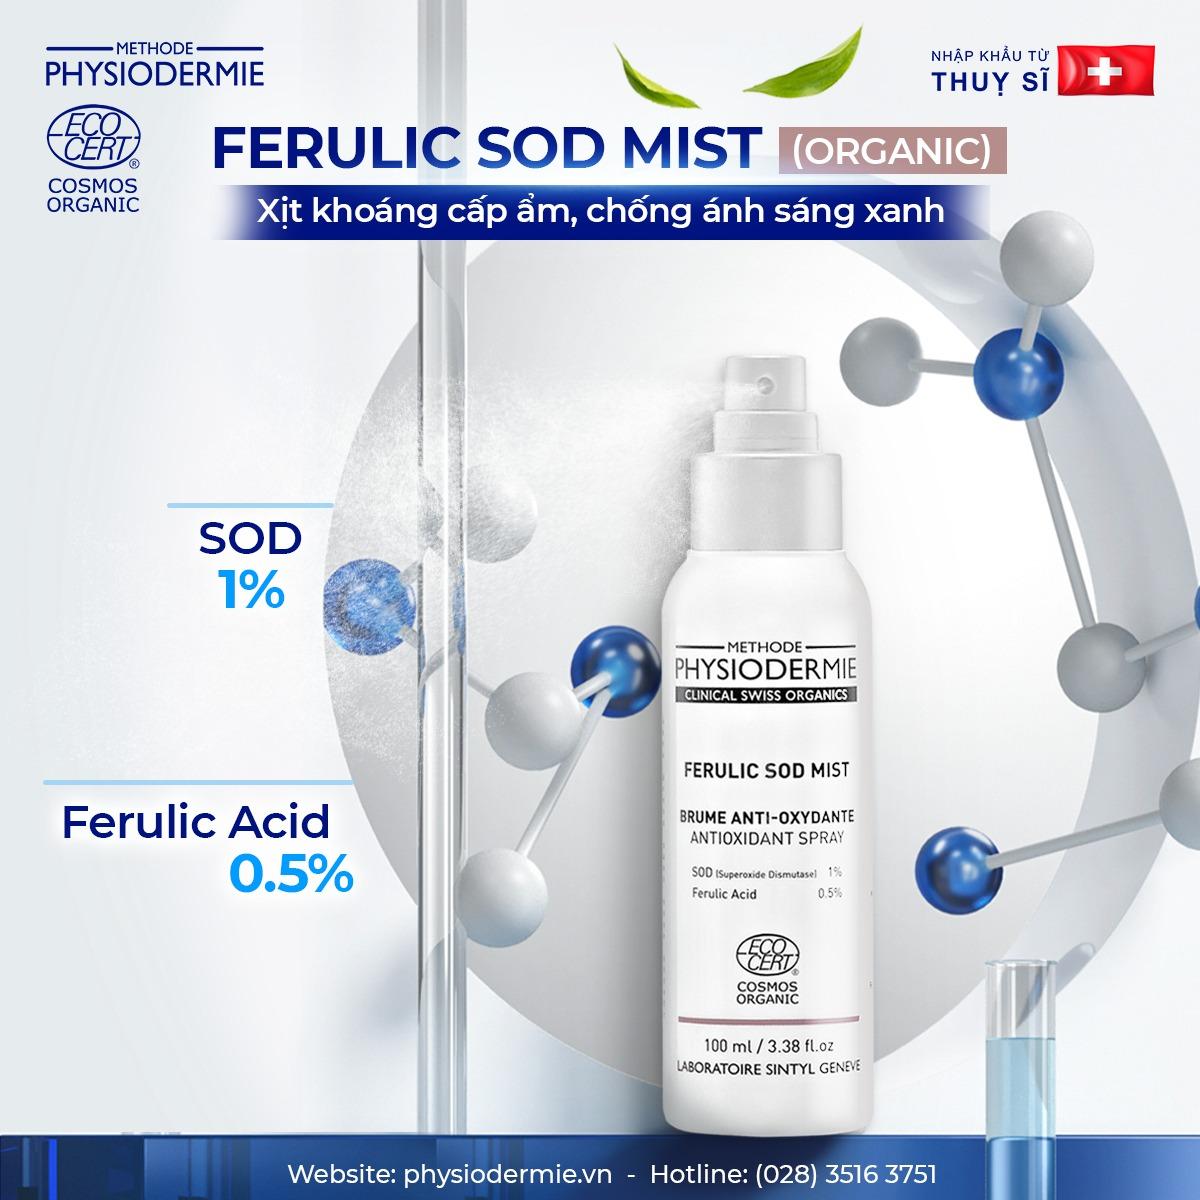 Ferulic-SOD-Mist-Organic-xit-chong-lao-hoa-xit-chong-anh-sang-xanh